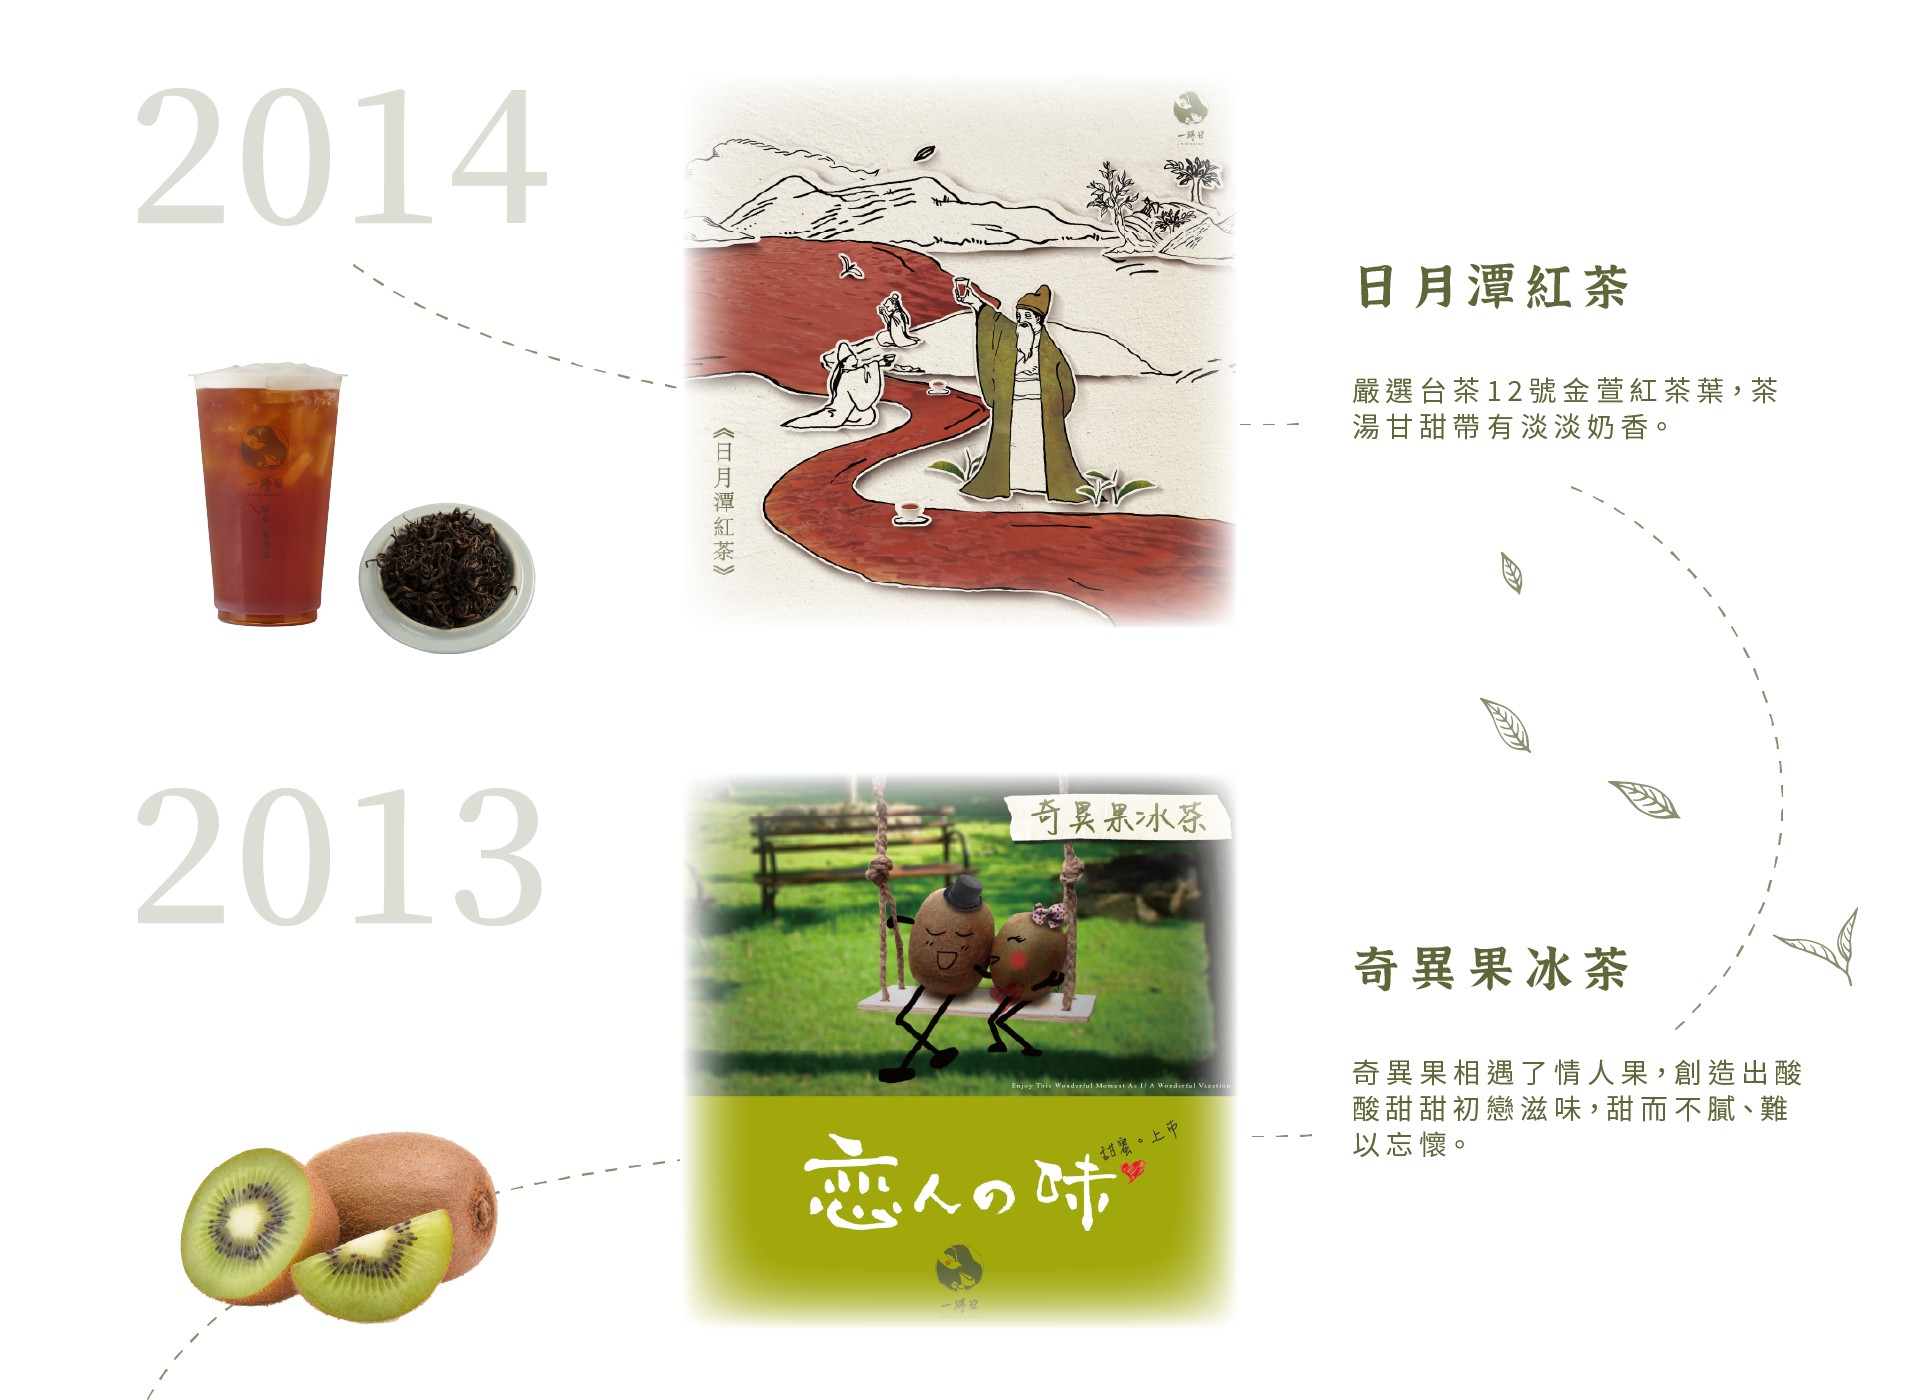 一沐日 201-2013年度飲品推薦-日月潭紅茶奇異果冰茶